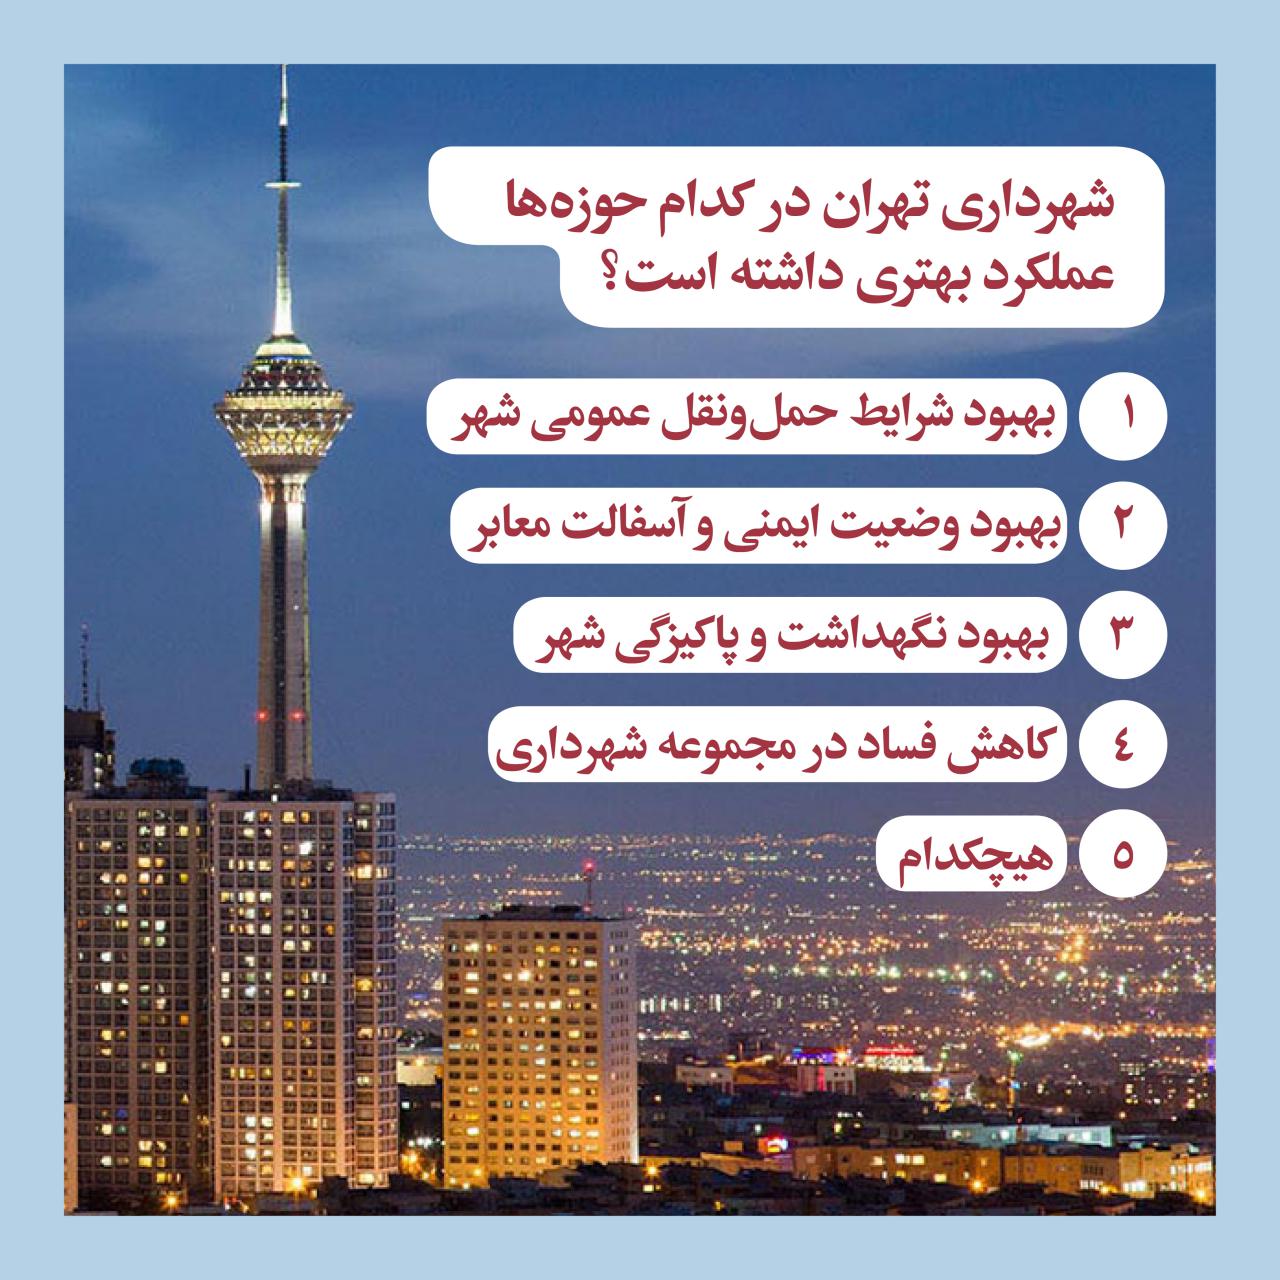 نظر مخاطبان اقتصادآنلاین درباره عملکرد شهرداری تهران طی دو سال اخیر/ ثبت نارضایتی 78درصدی